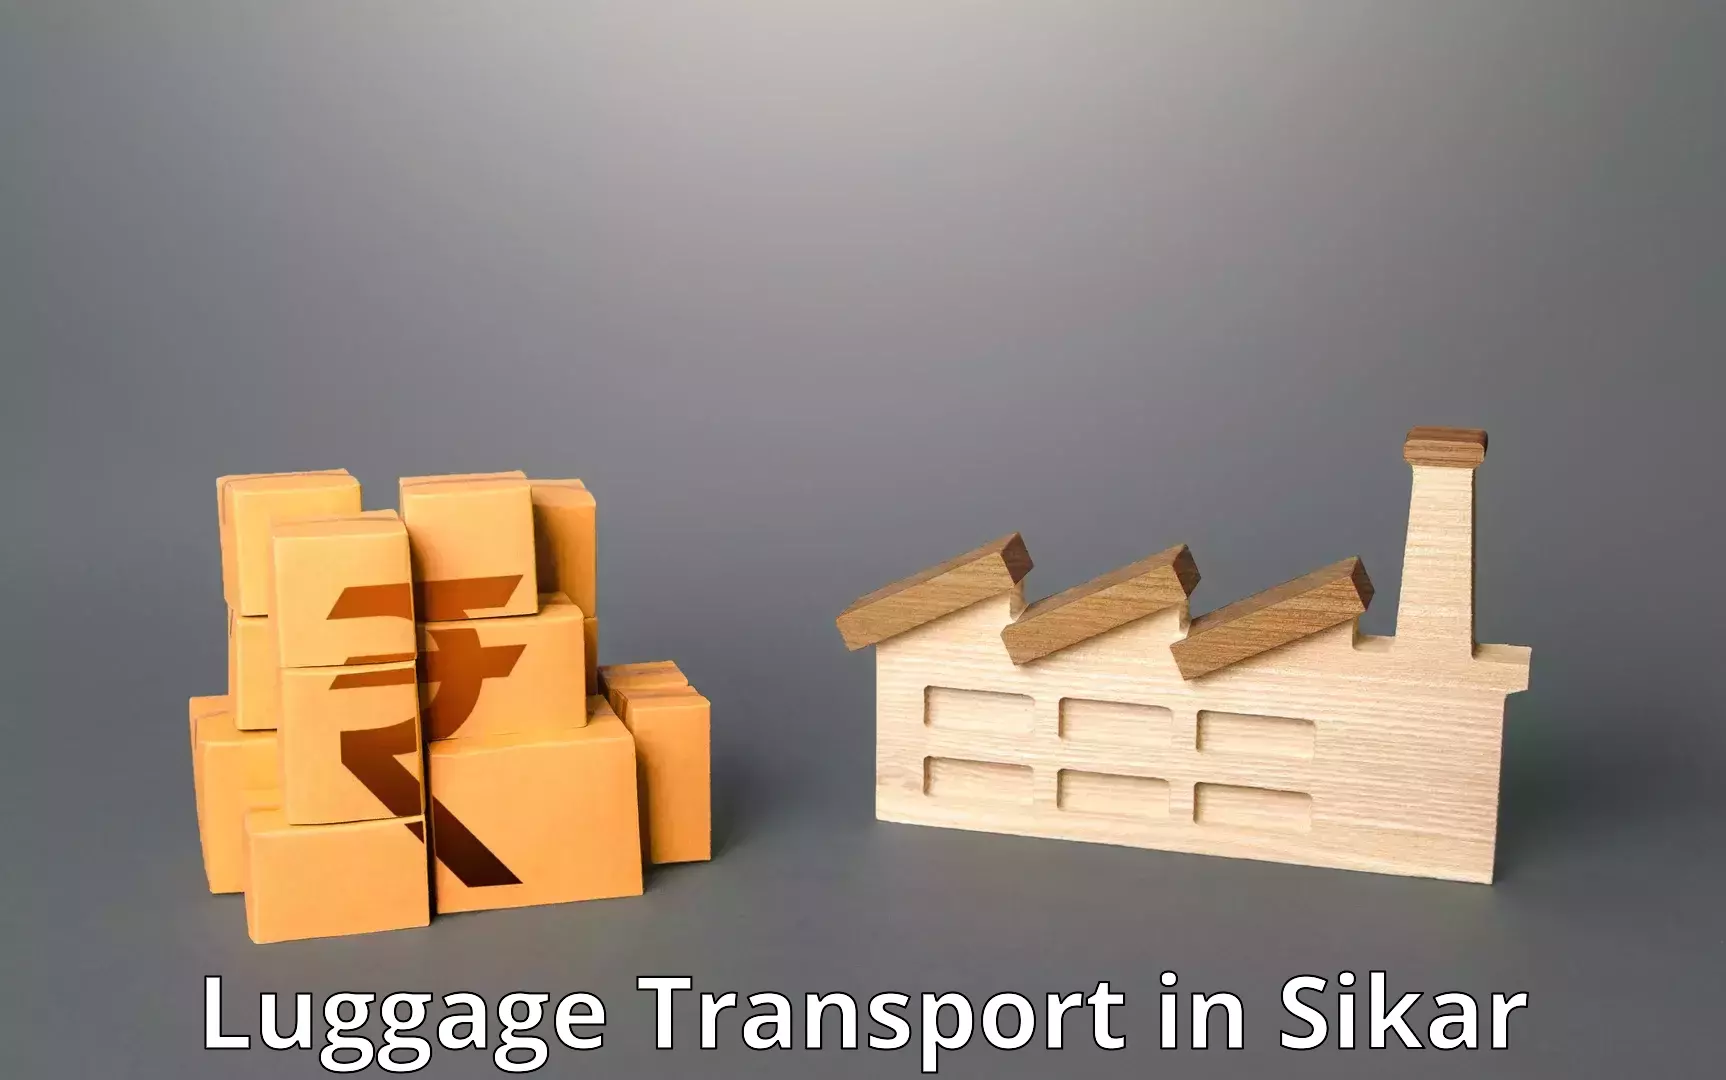 Baggage transport innovation in Sikar